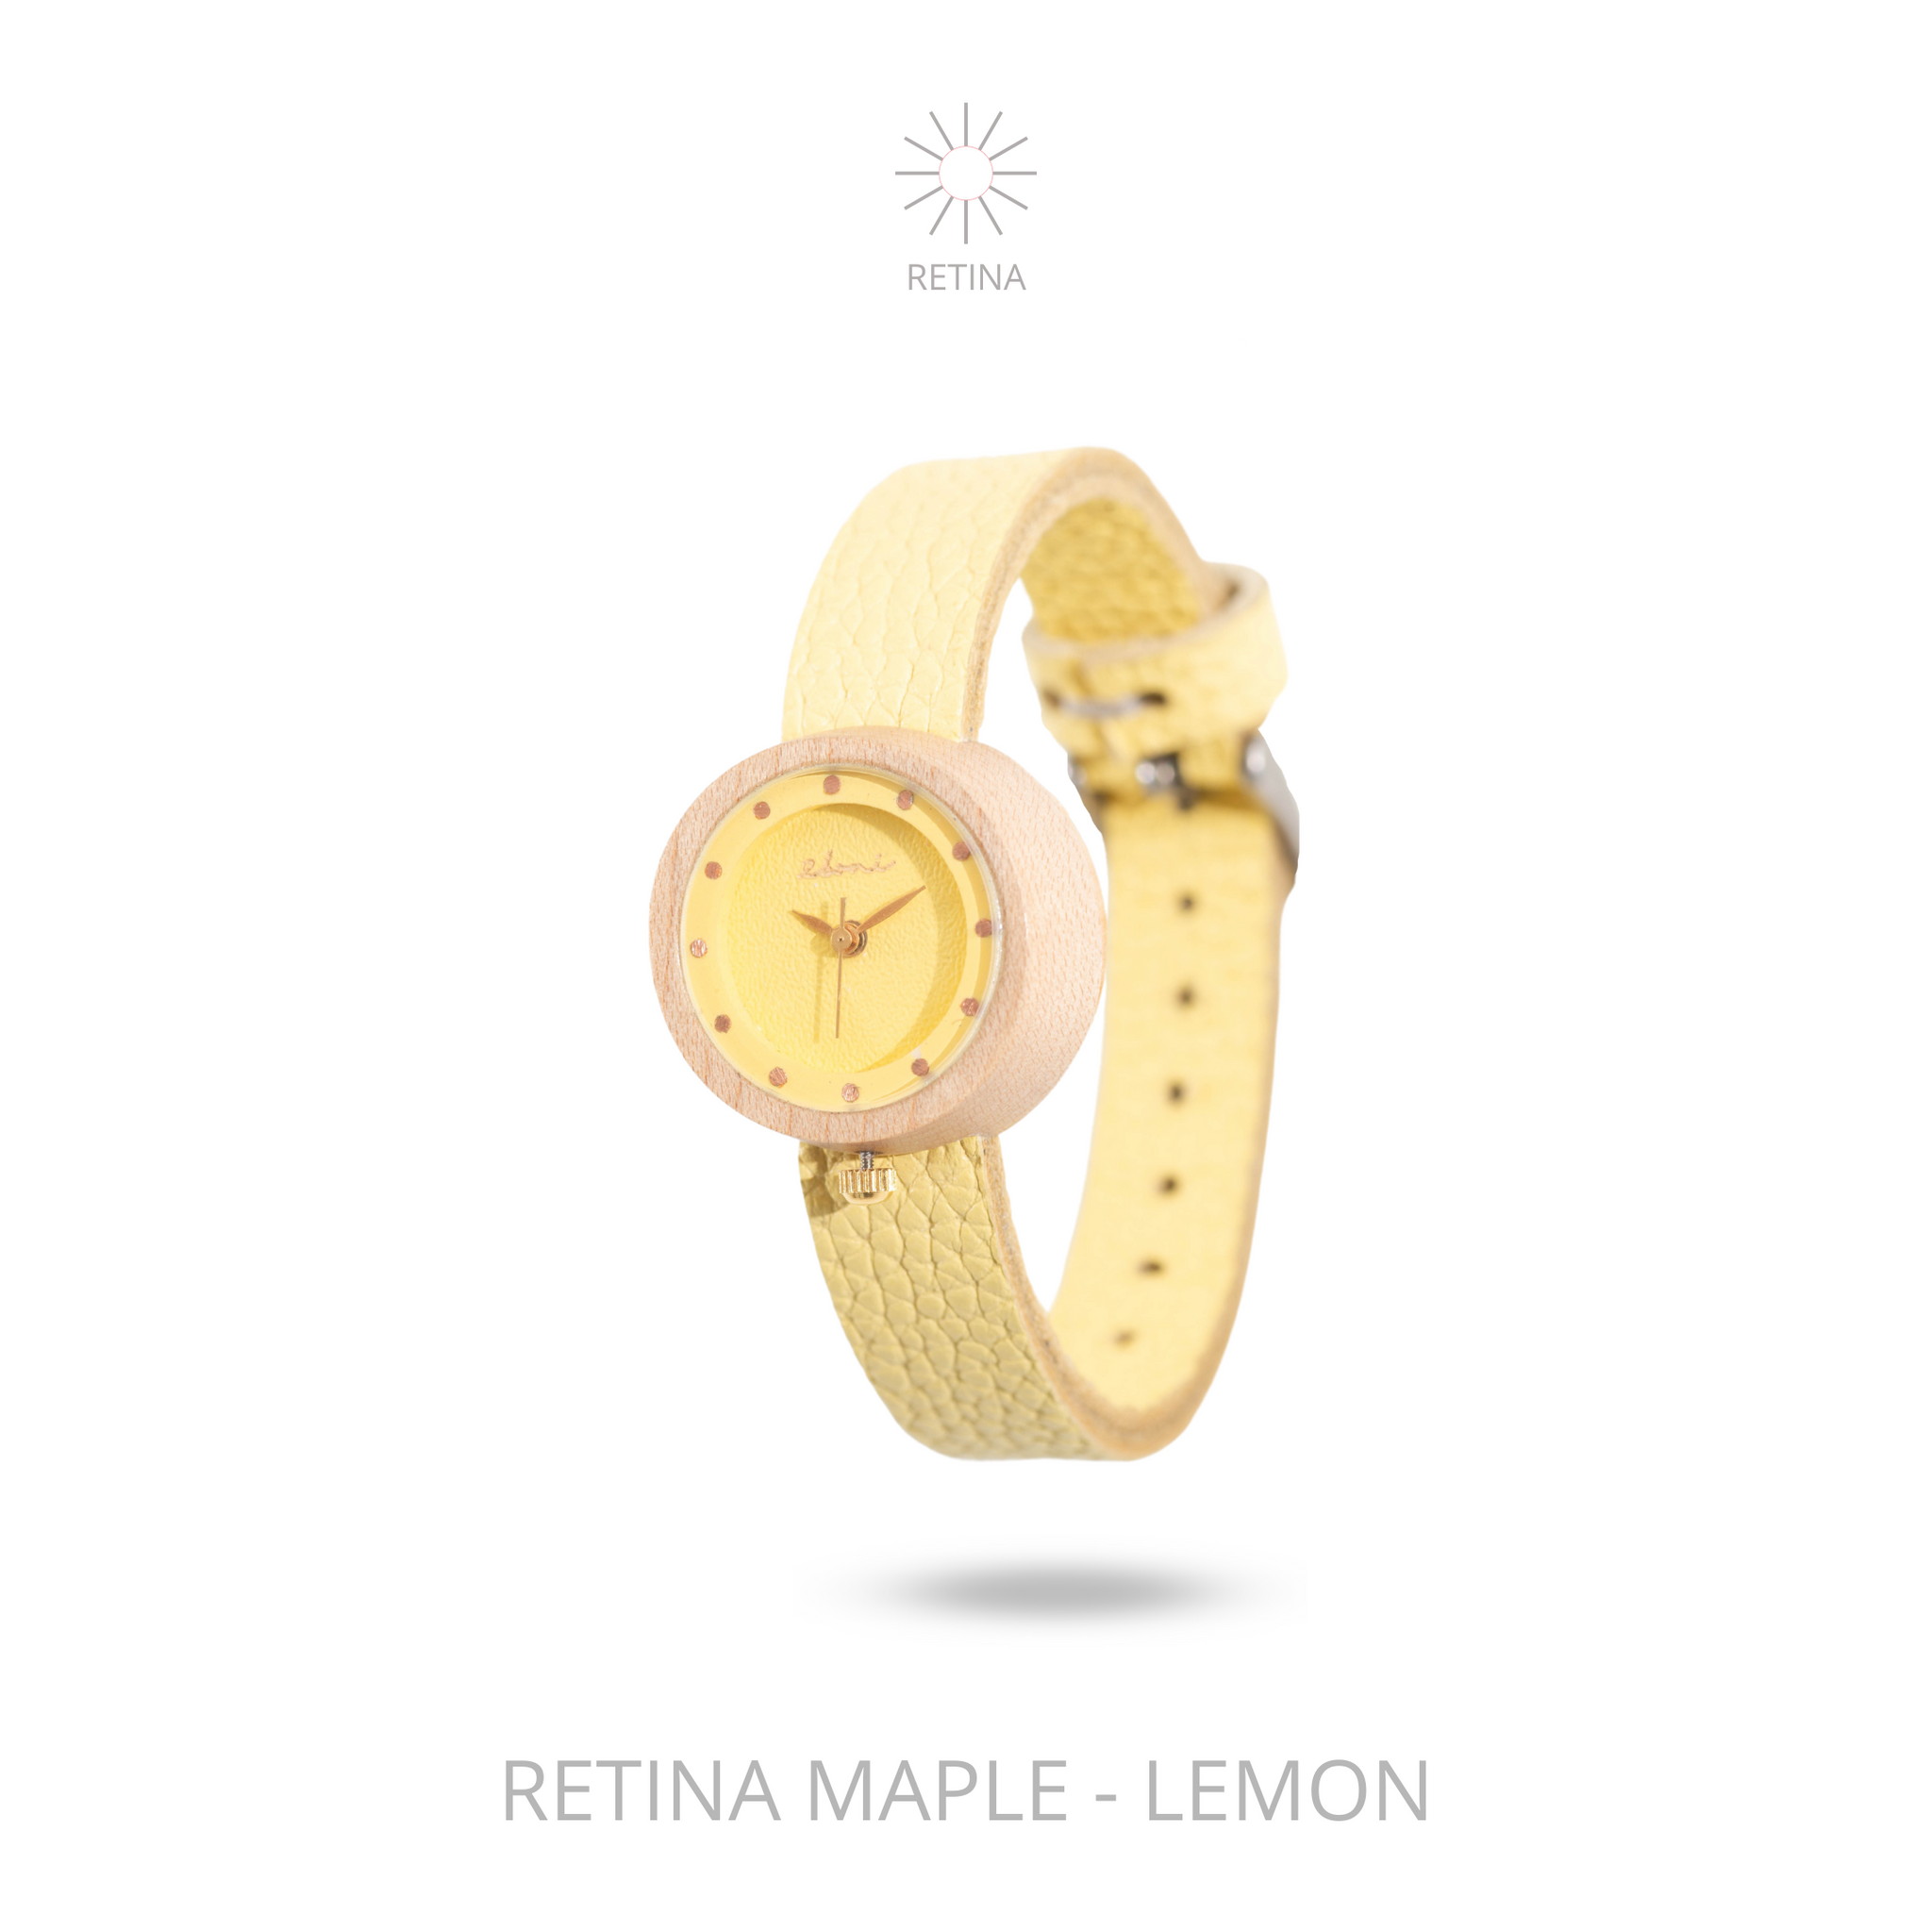 Eboni Retina Maple - Lemon